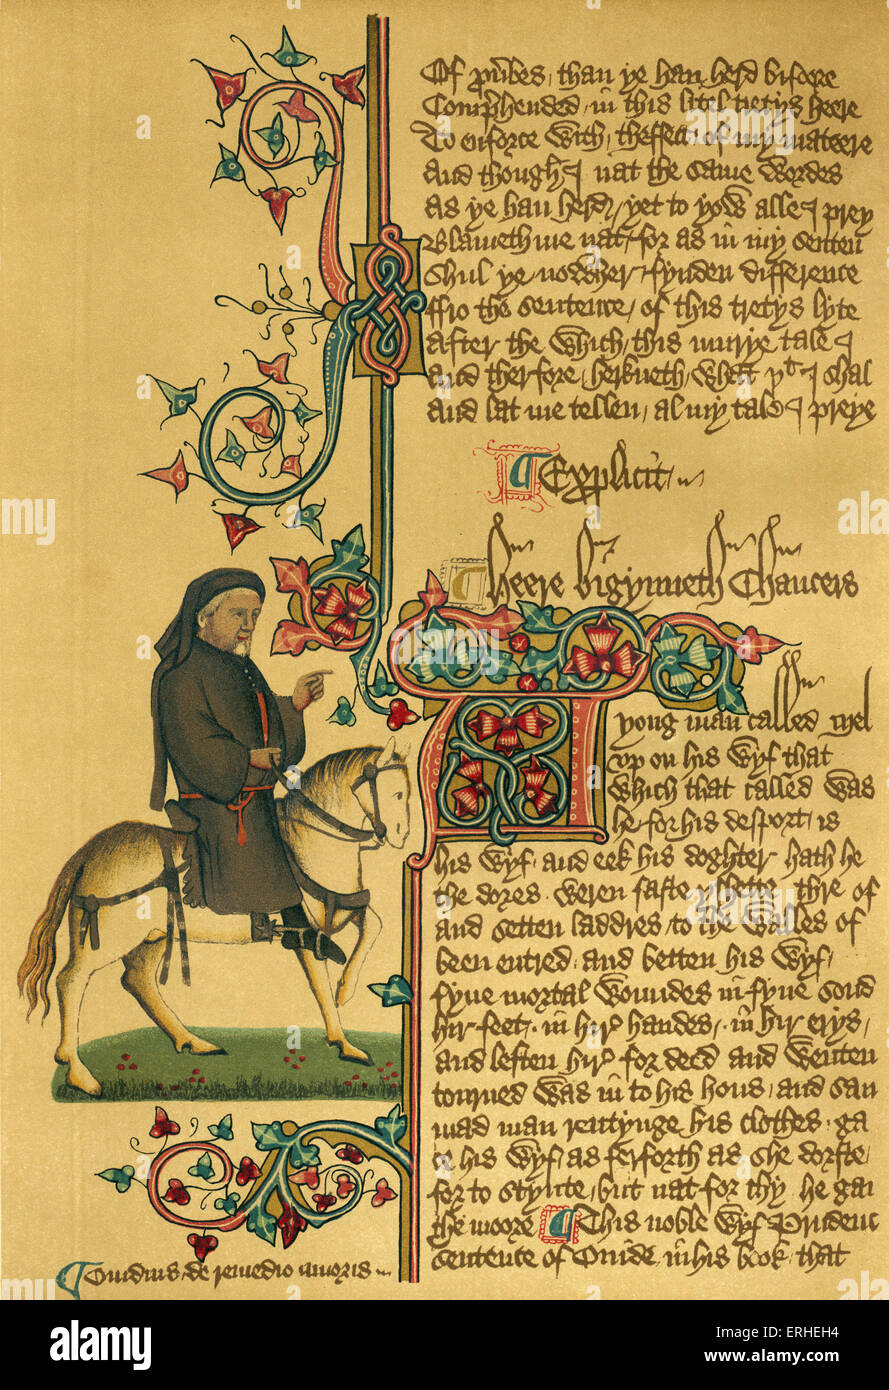 Geoffrey Chaucer a cavallo - il manoscritto c 1343-1400. Ellesmere Chaucer. Autore inglese, poeta e filosofo: c 1343 - Foto Stock